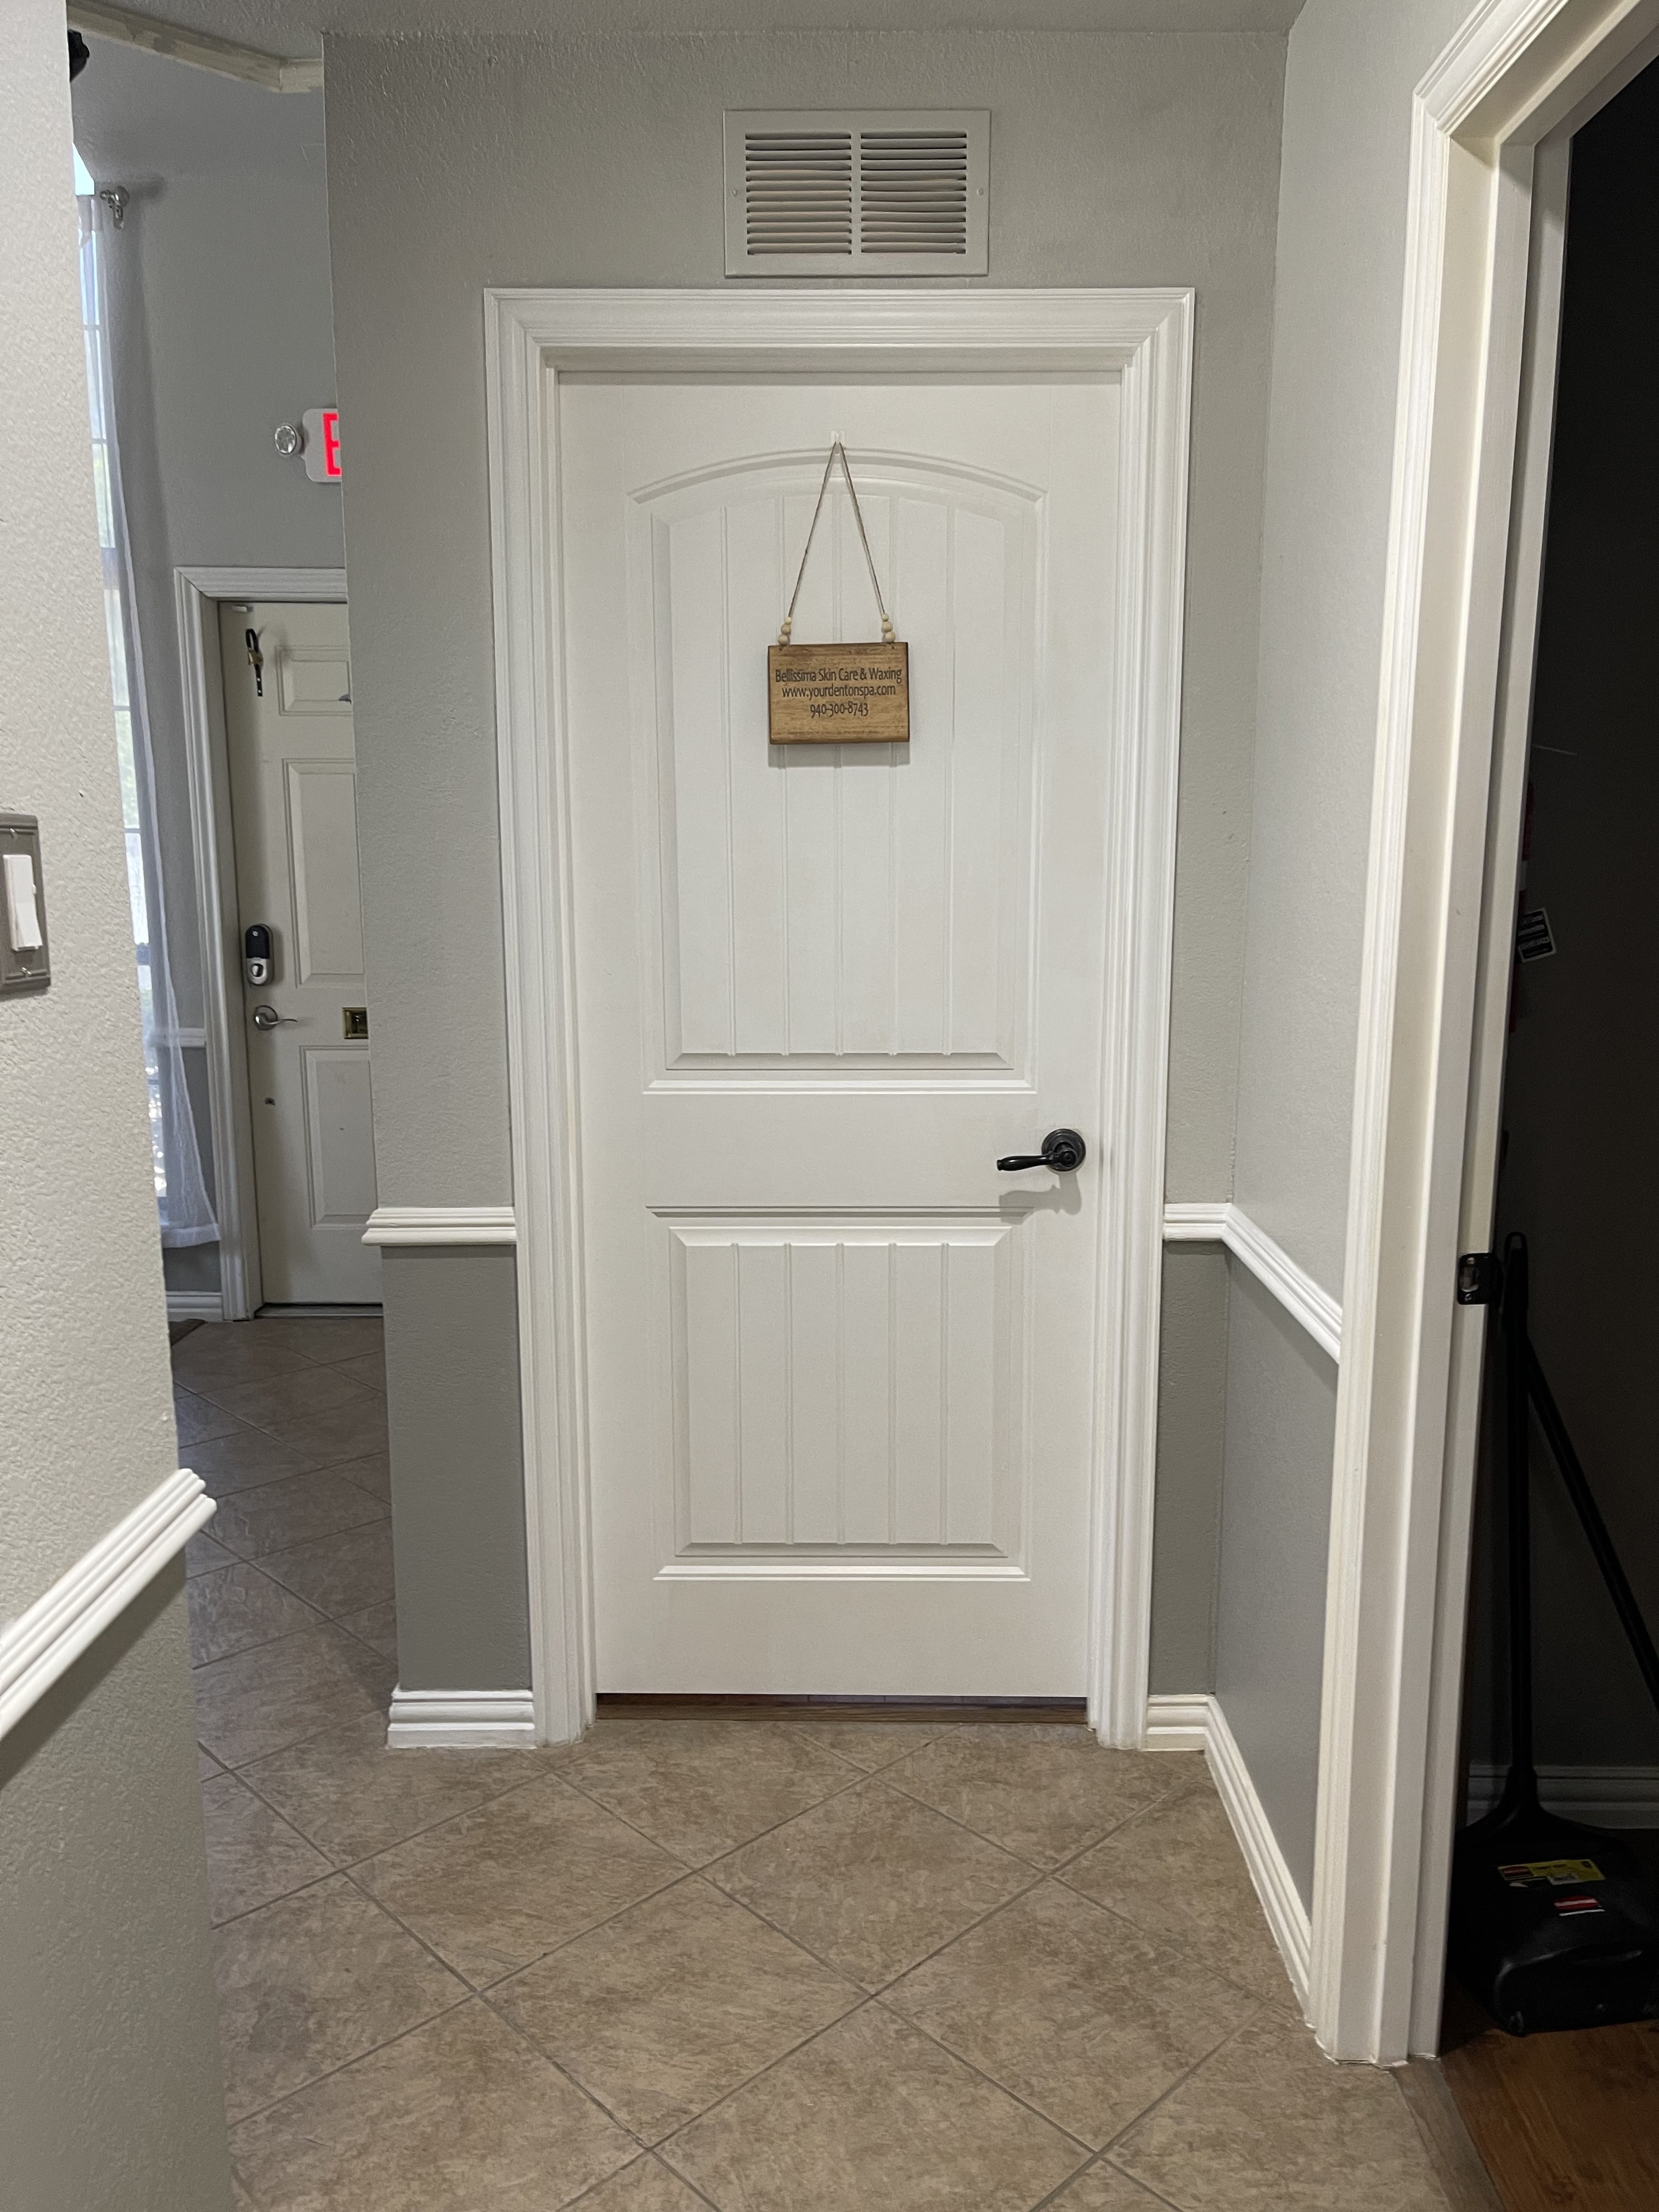 Salon Door